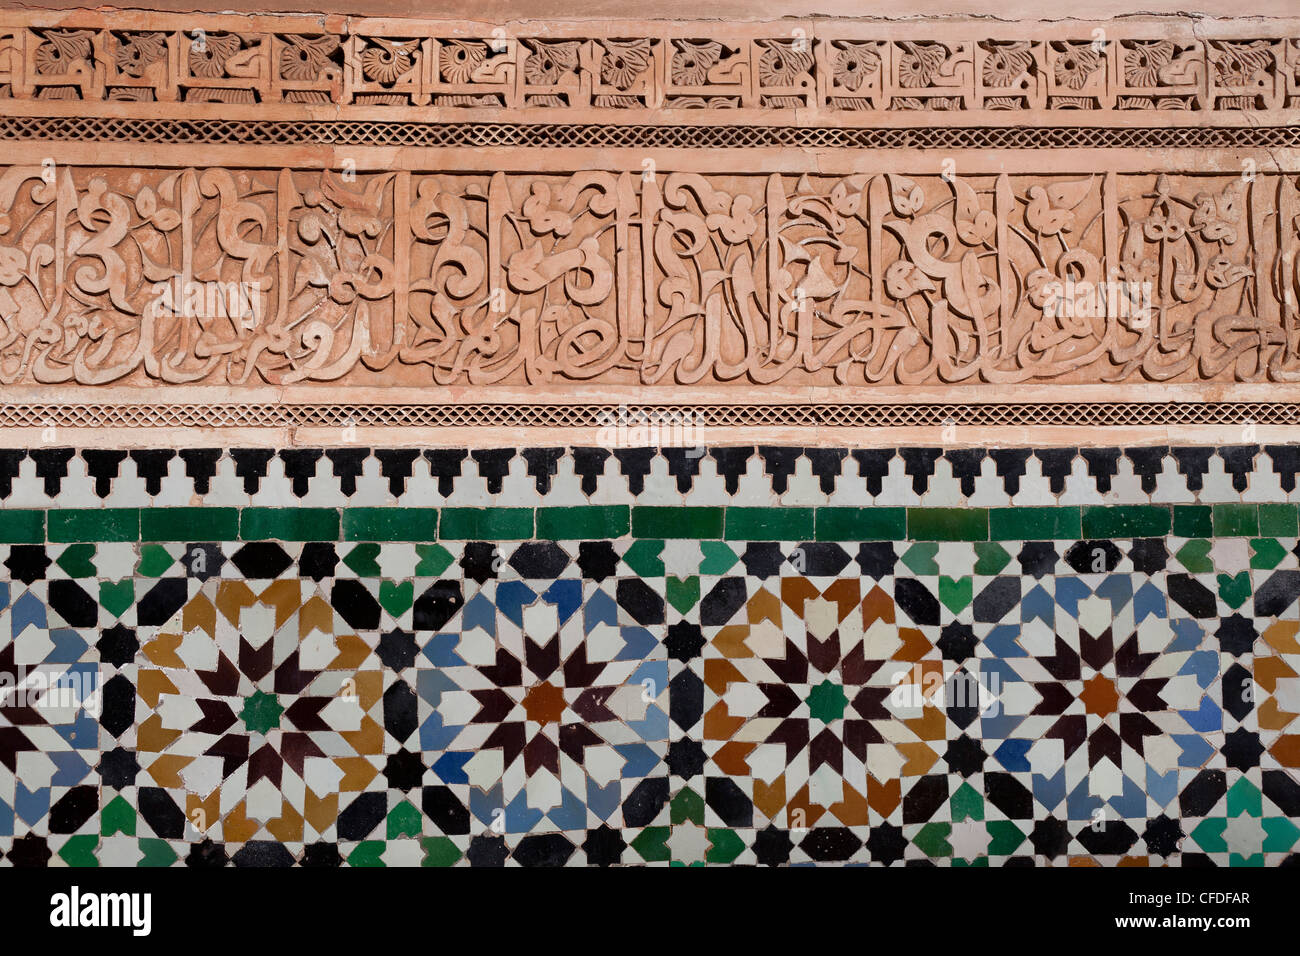 La caligrafía y zellige en Medersa Ben Yousef, la mayor escuela coránica en el Magreb, Marrakech, Marruecos Foto de stock